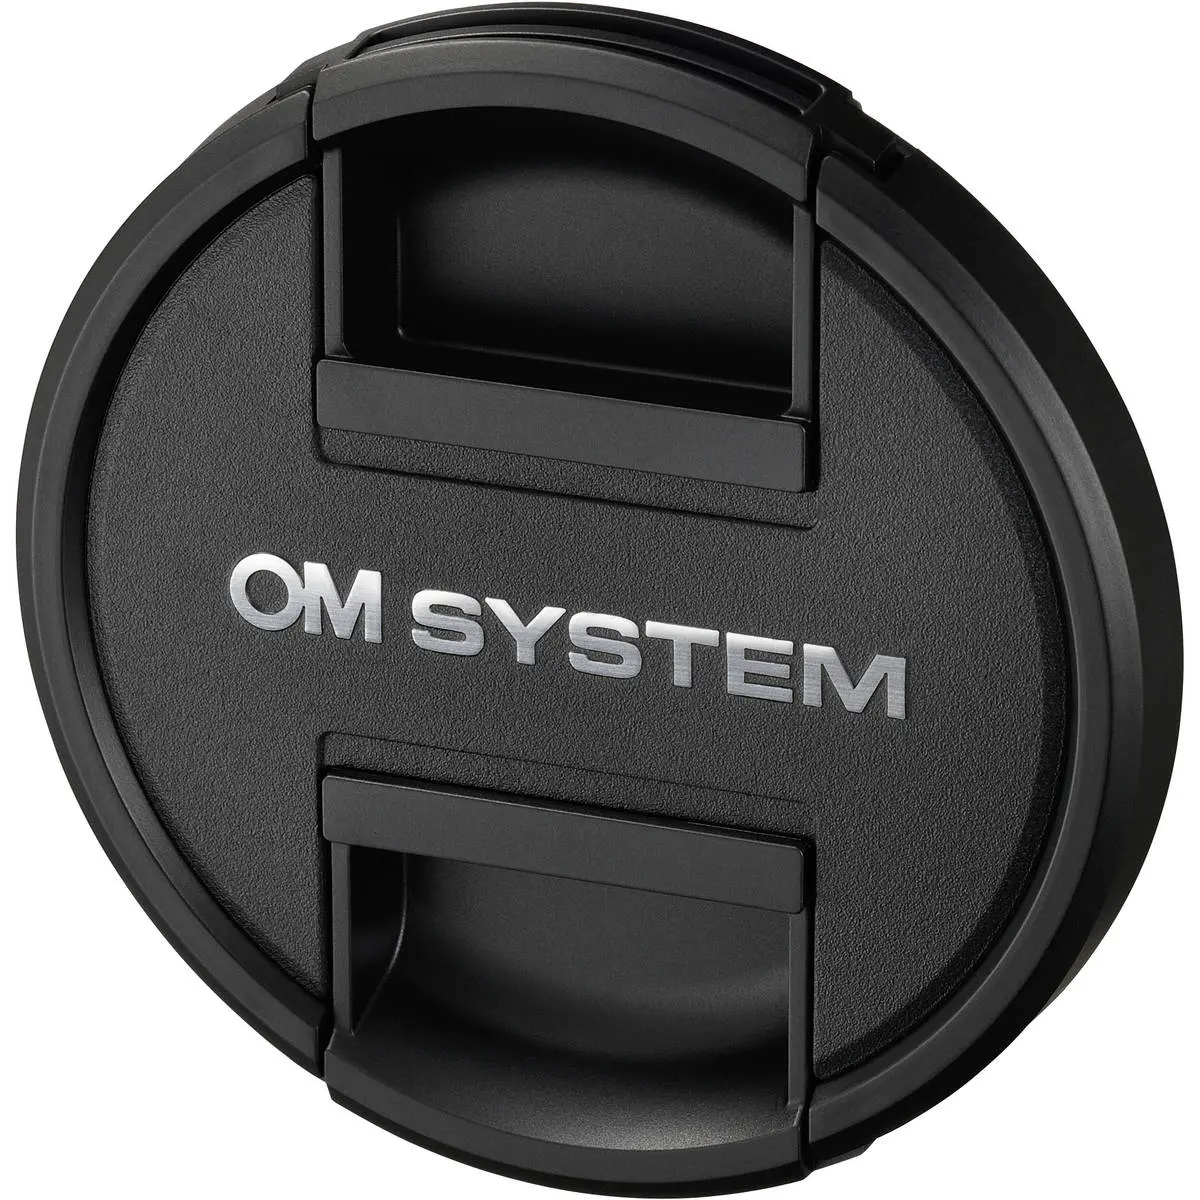 5. OM System M.Zuiko Digital ED 40-150mm F4.0 PRO